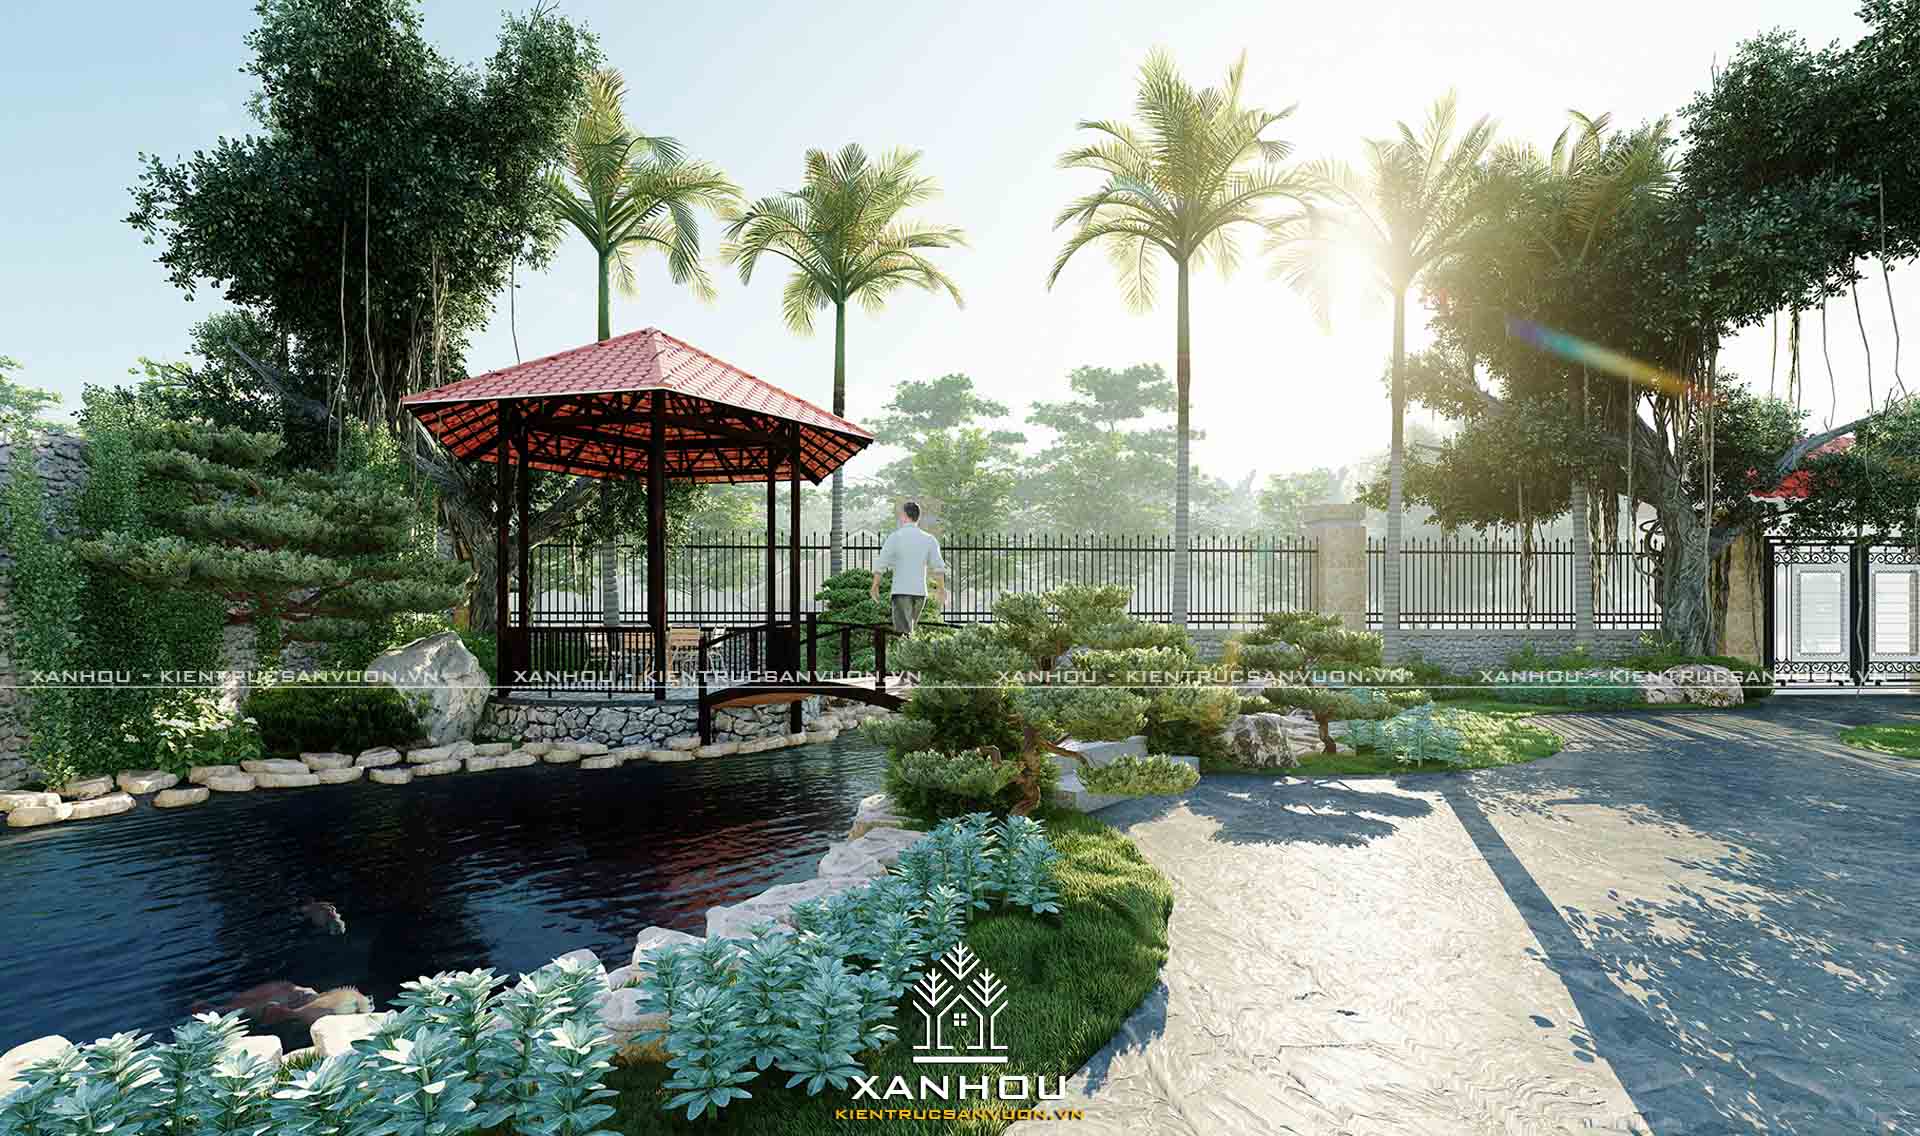 Top 99 mẫu thiết kế sân vườn đẹp hiện đại đơn giản dễ thi công [2022] - Sân vườn Xanhou 1